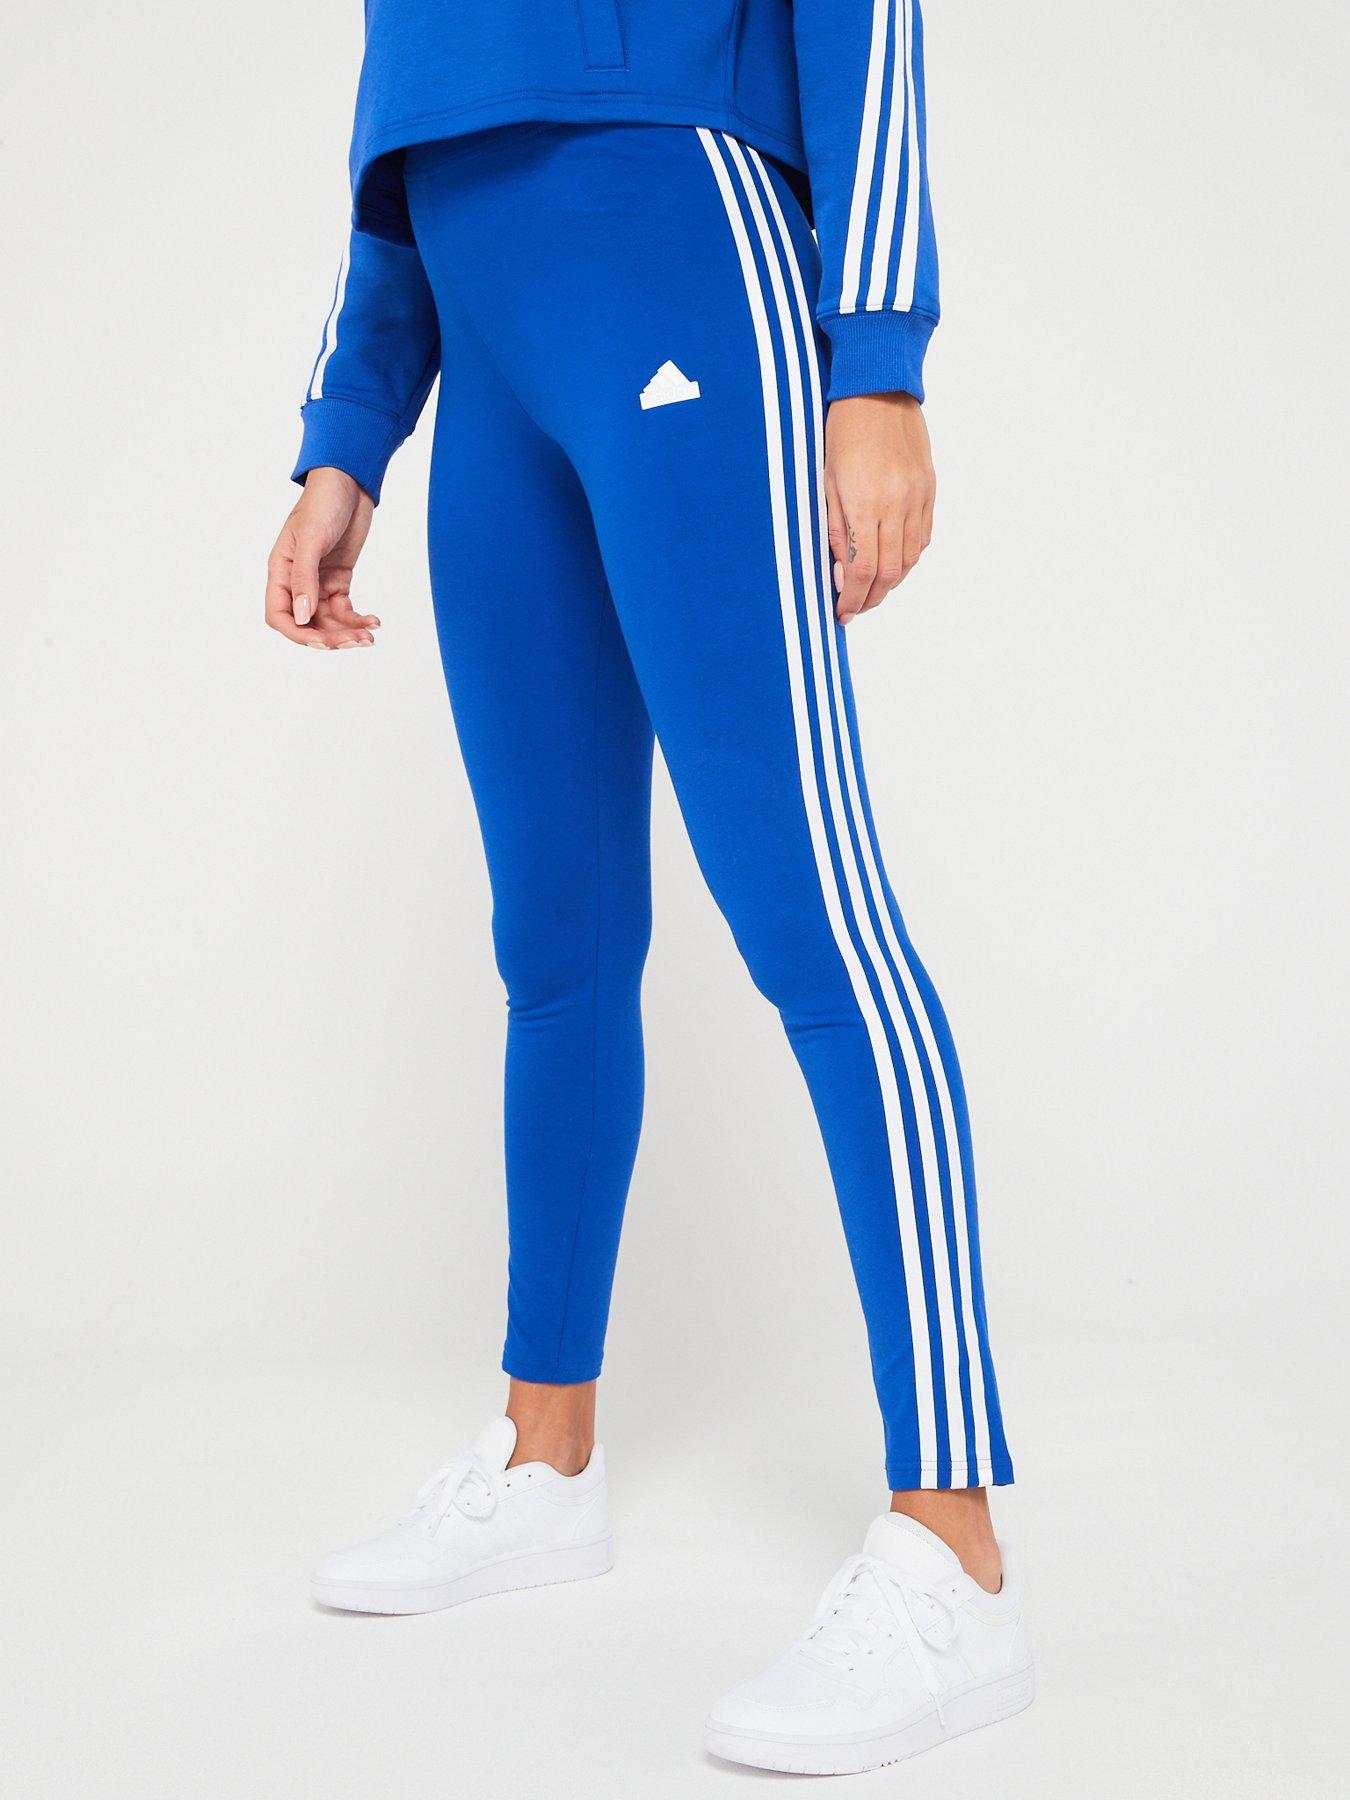 adidas Women's Sportswear 3-Stripe Tights